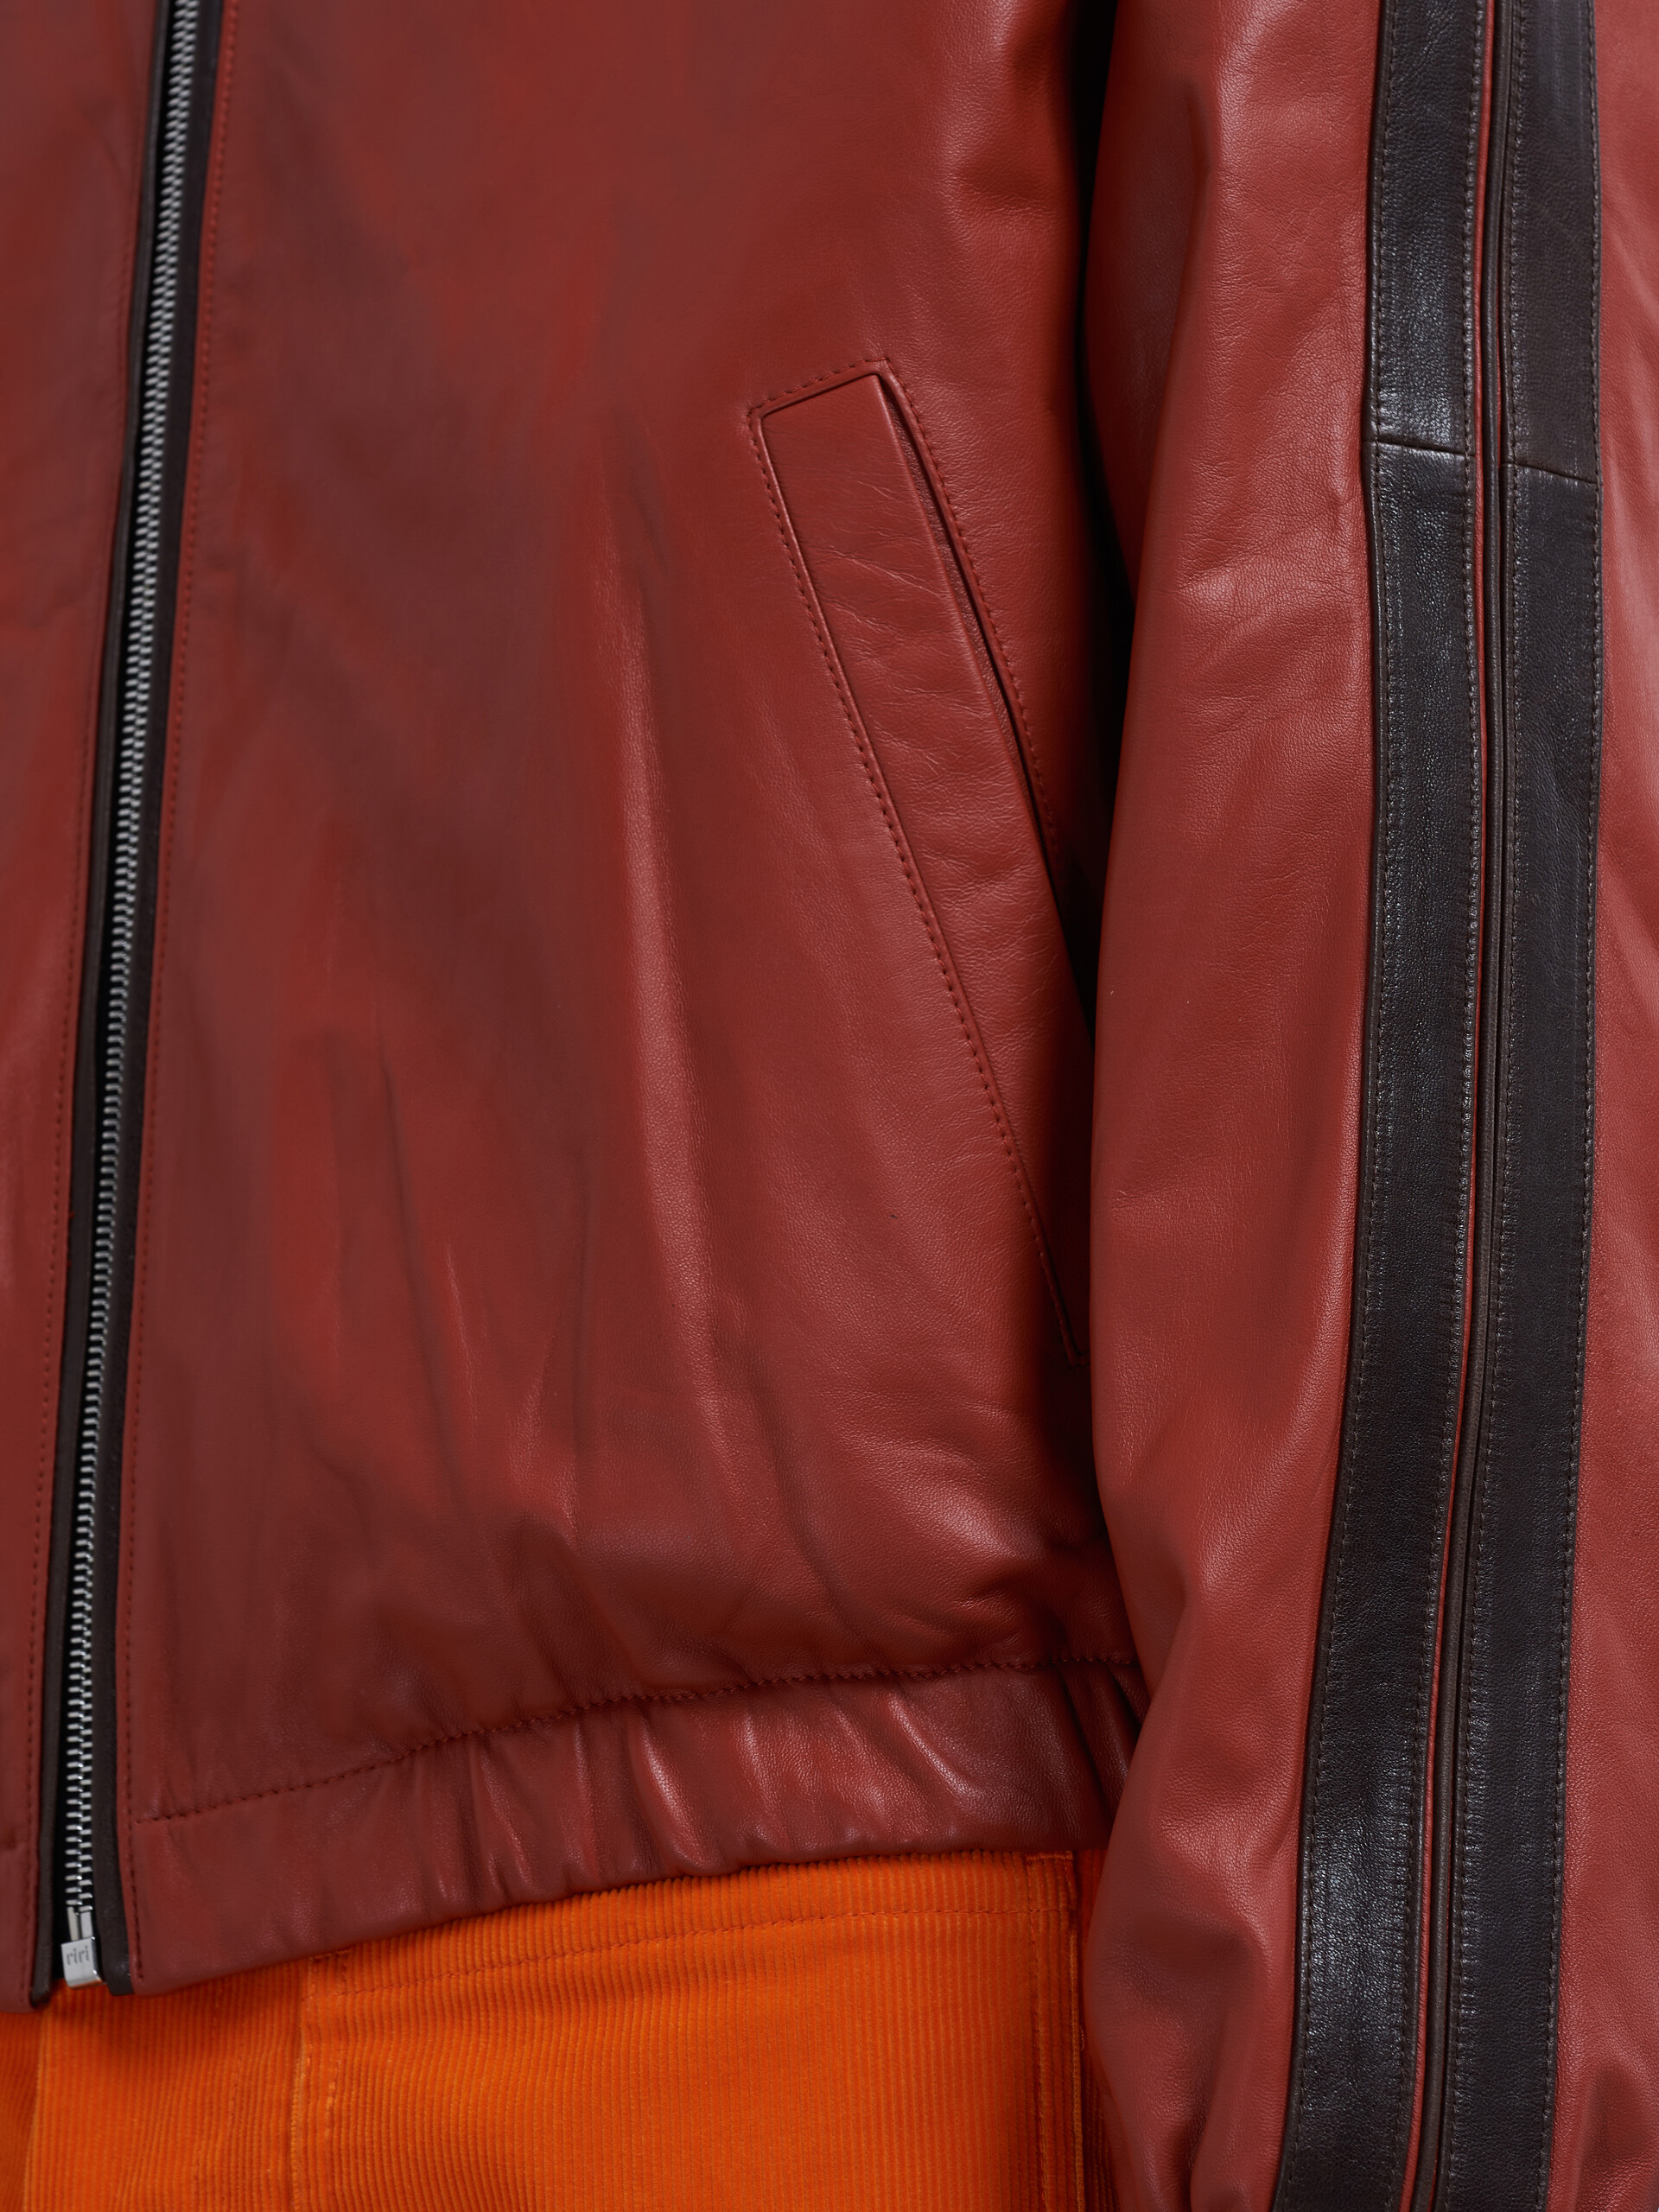 Lamb leather jacket - Jackets - Image 5